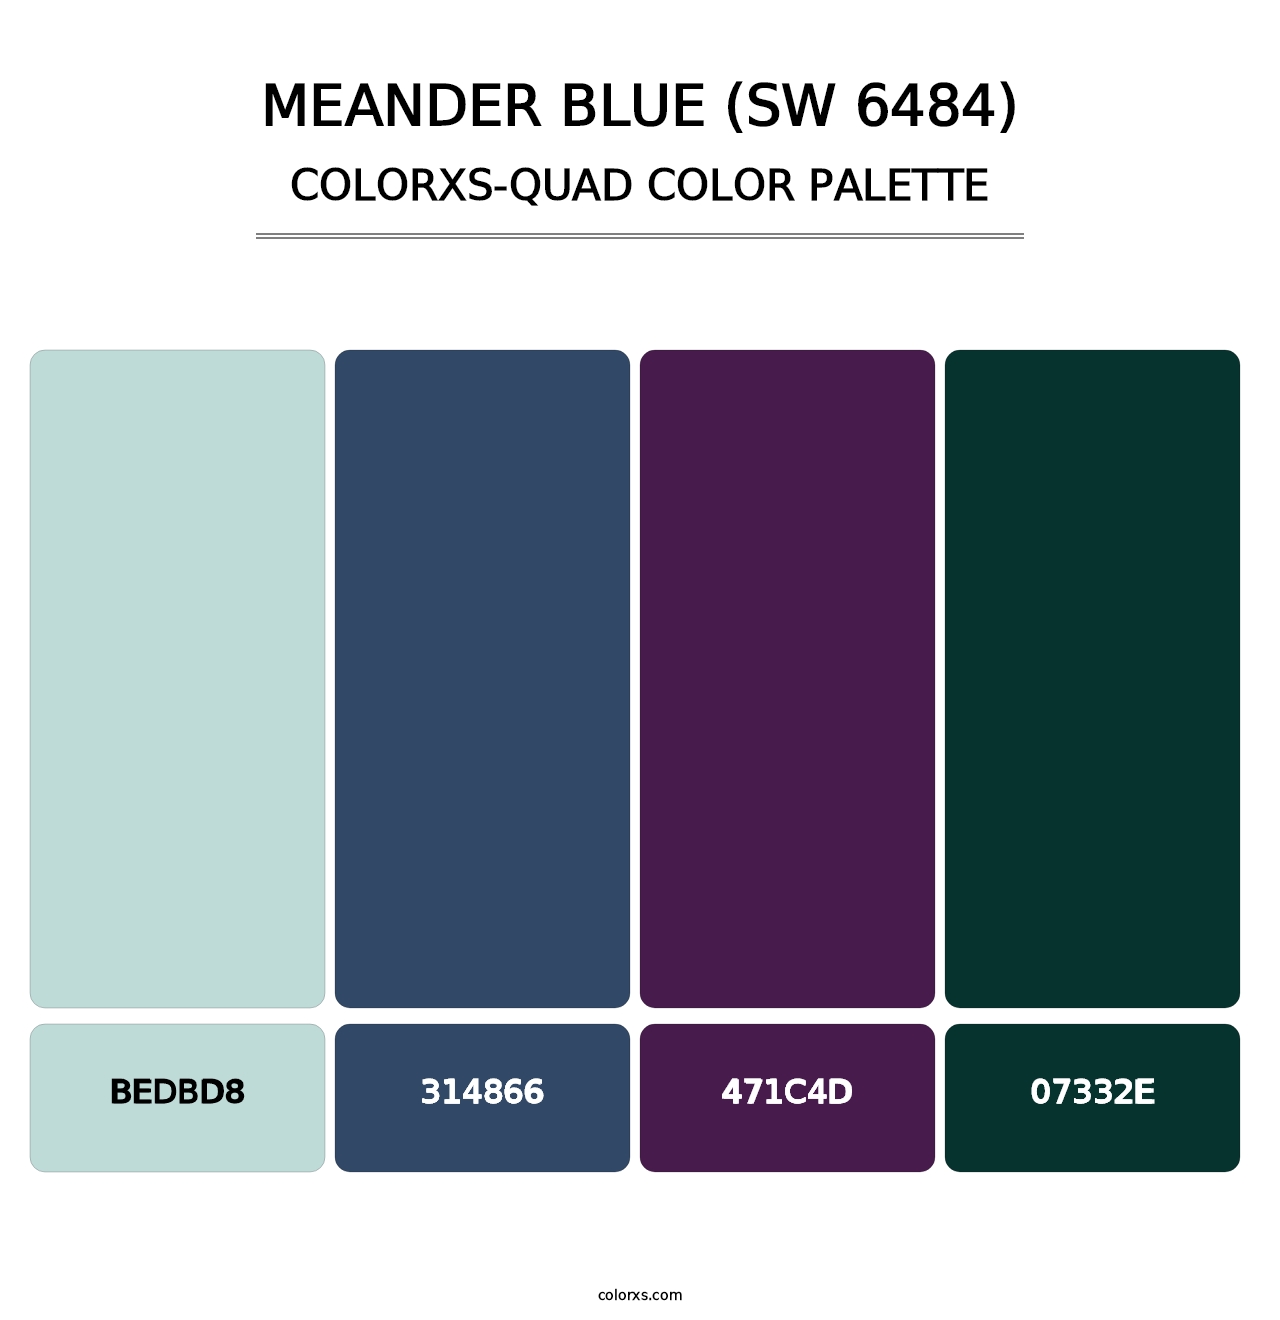 Meander Blue (SW 6484) - Colorxs Quad Palette